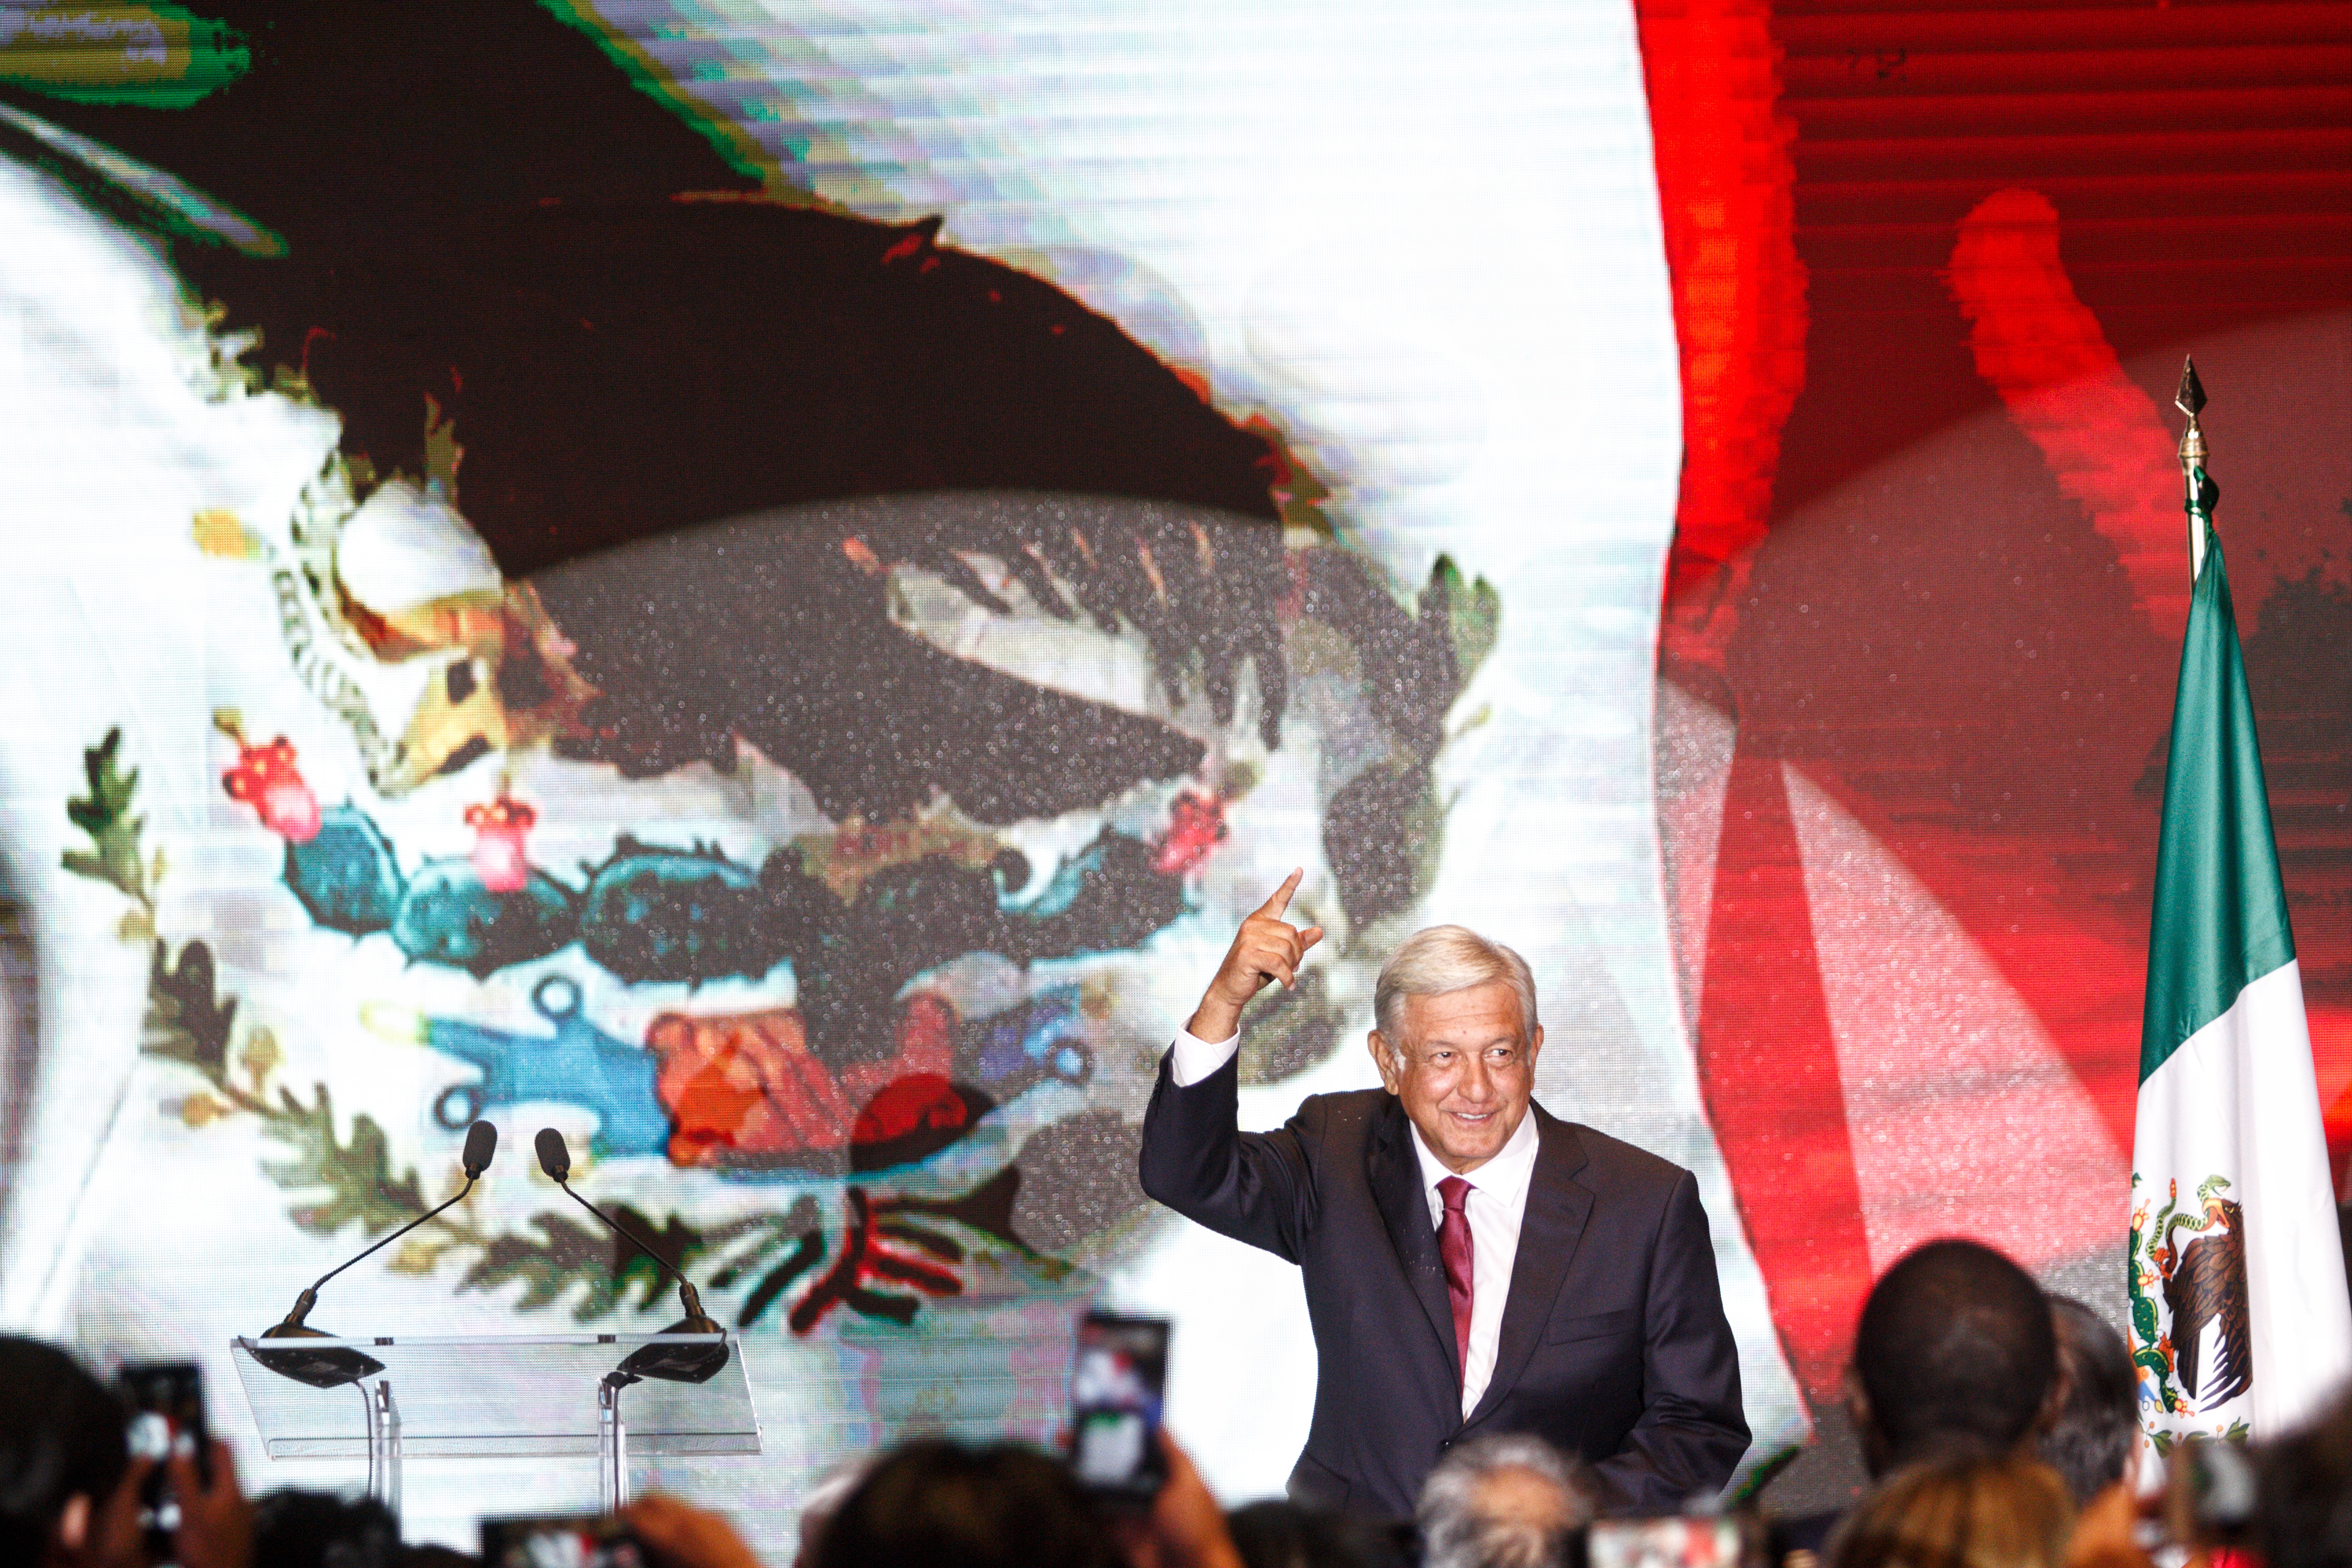 CIUDAD DE MÉXICO, 01JULIO2018.- Andrés Manuel López Obrador, virtual ganador de la elección presidencial, ofreció un mensaje a medios de comunicación en un hotel en la zona centro de la ciudad. FOTO: ISAAC ESQUIVEL /CUARTOSCURO.COM